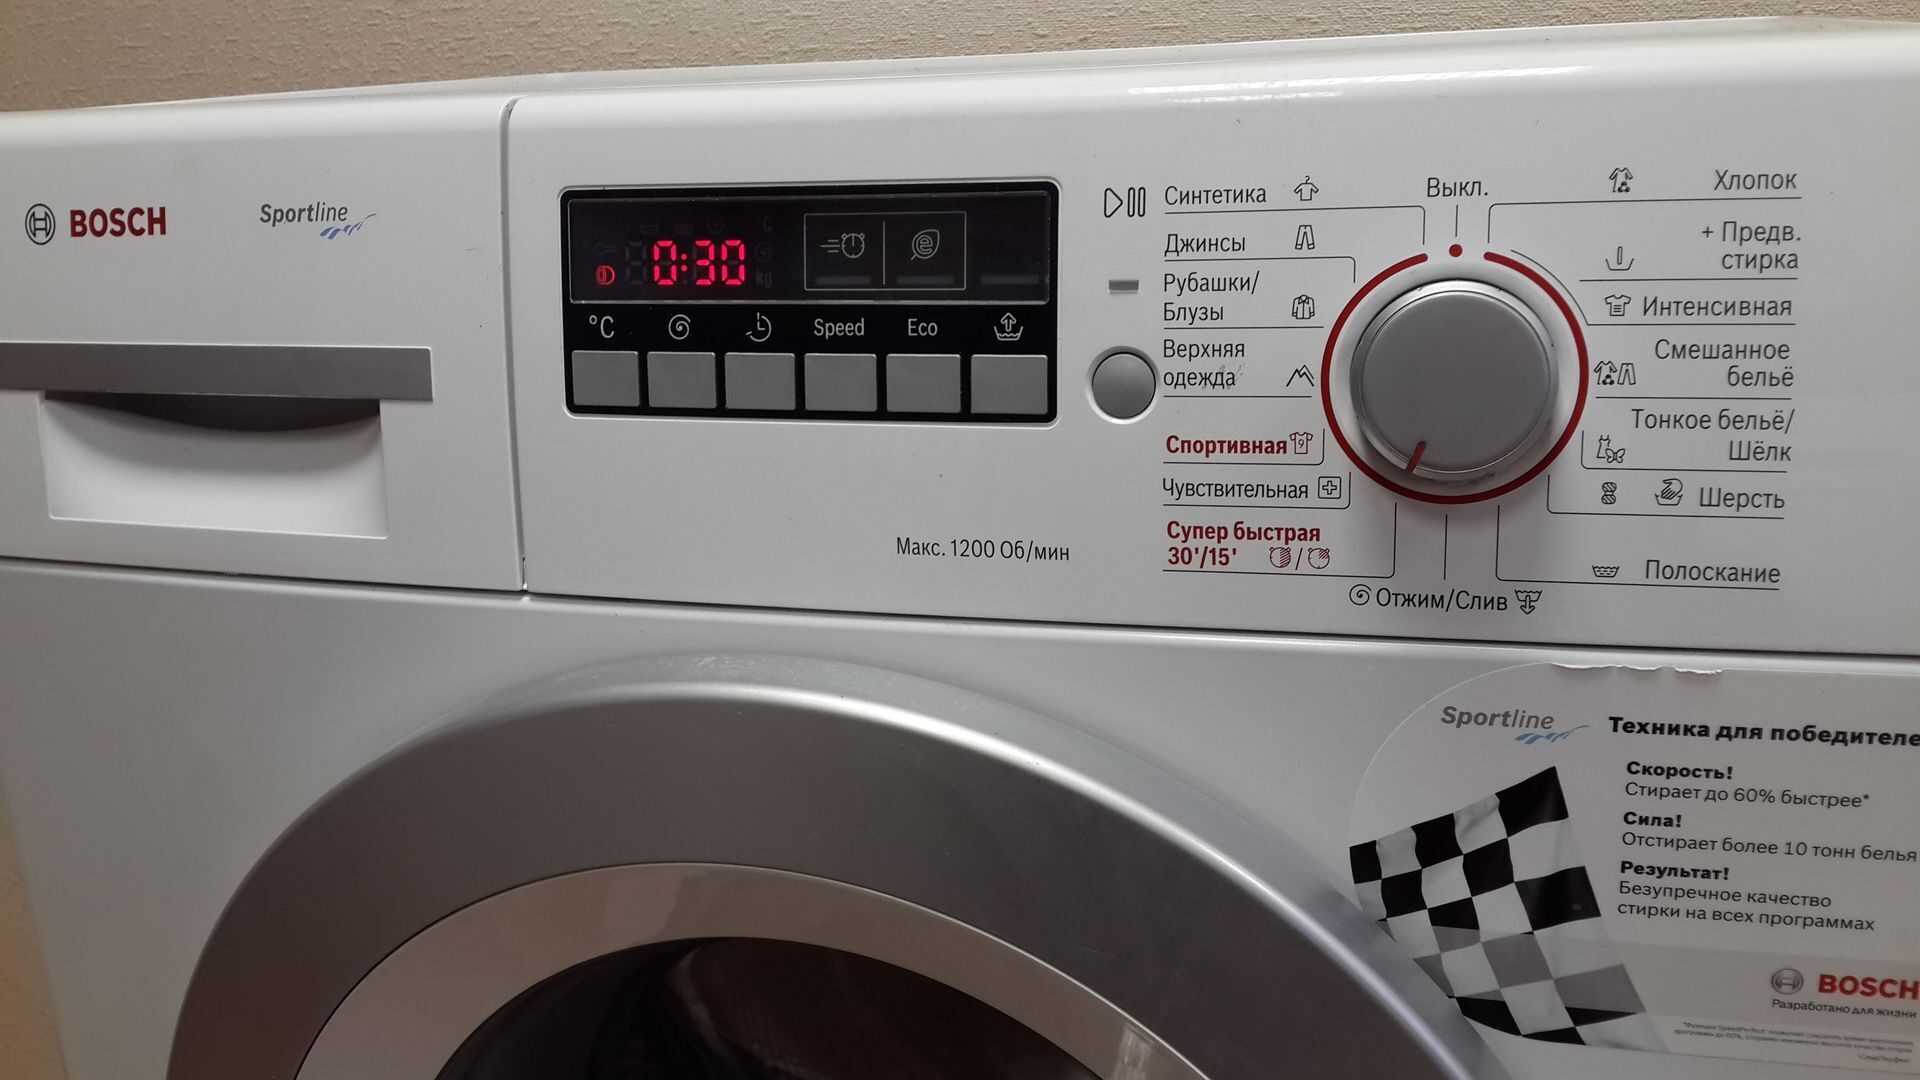 Ошибка f37 в стиральной машине бош — как избавиться